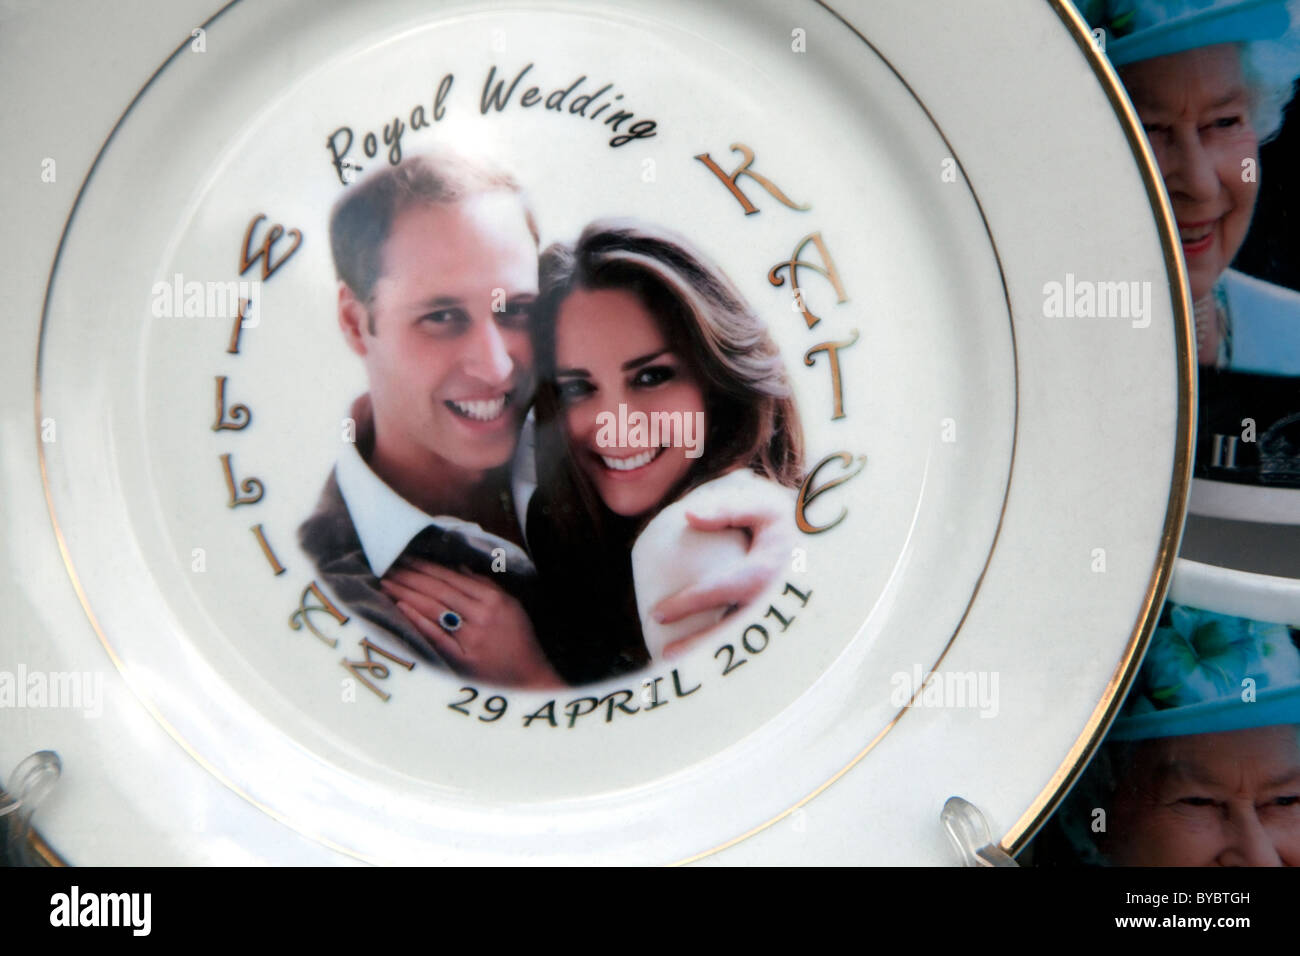 Mariage Royal de souvenirs pour le prince William et Kate Middleton Banque D'Images